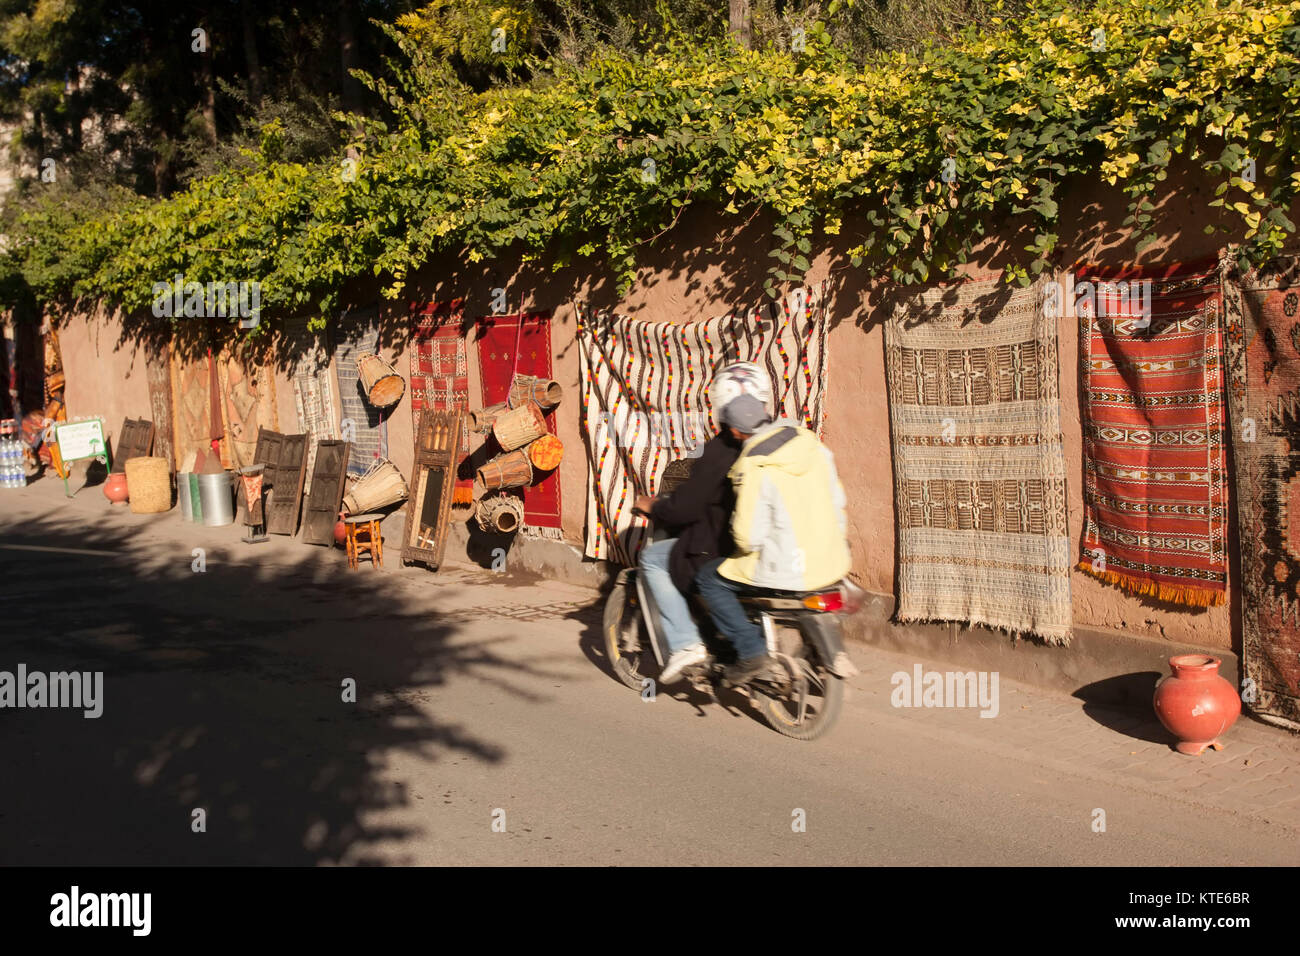 Les hommes sur un scooter cours des marchandises, rue souq impromptus, à Marrakech, Maroc Banque D'Images